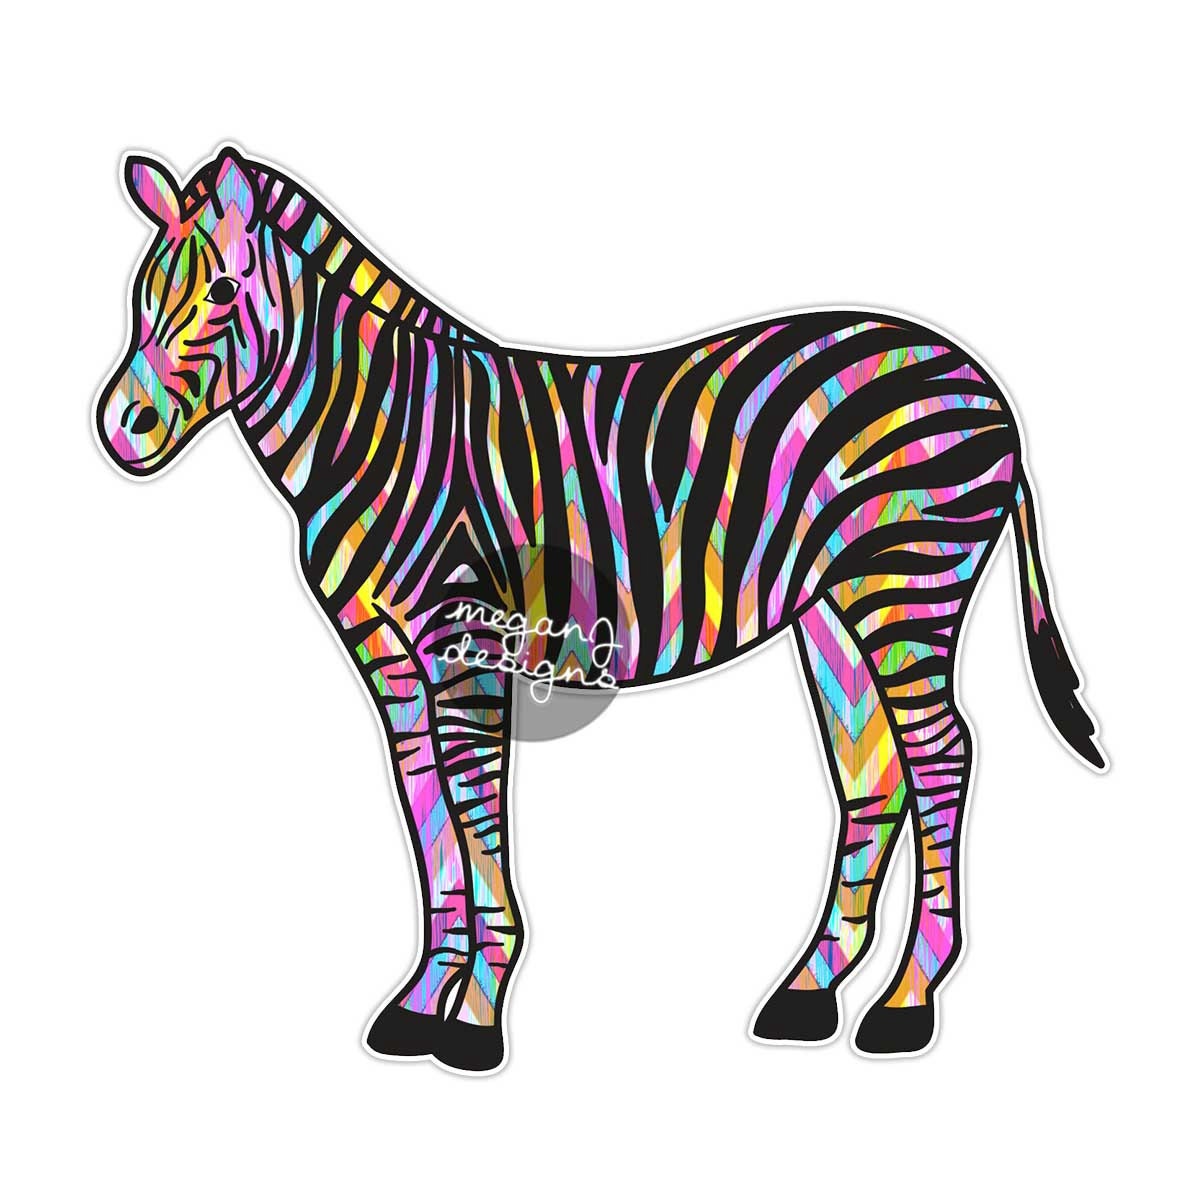 Cute Zebra Sticker 